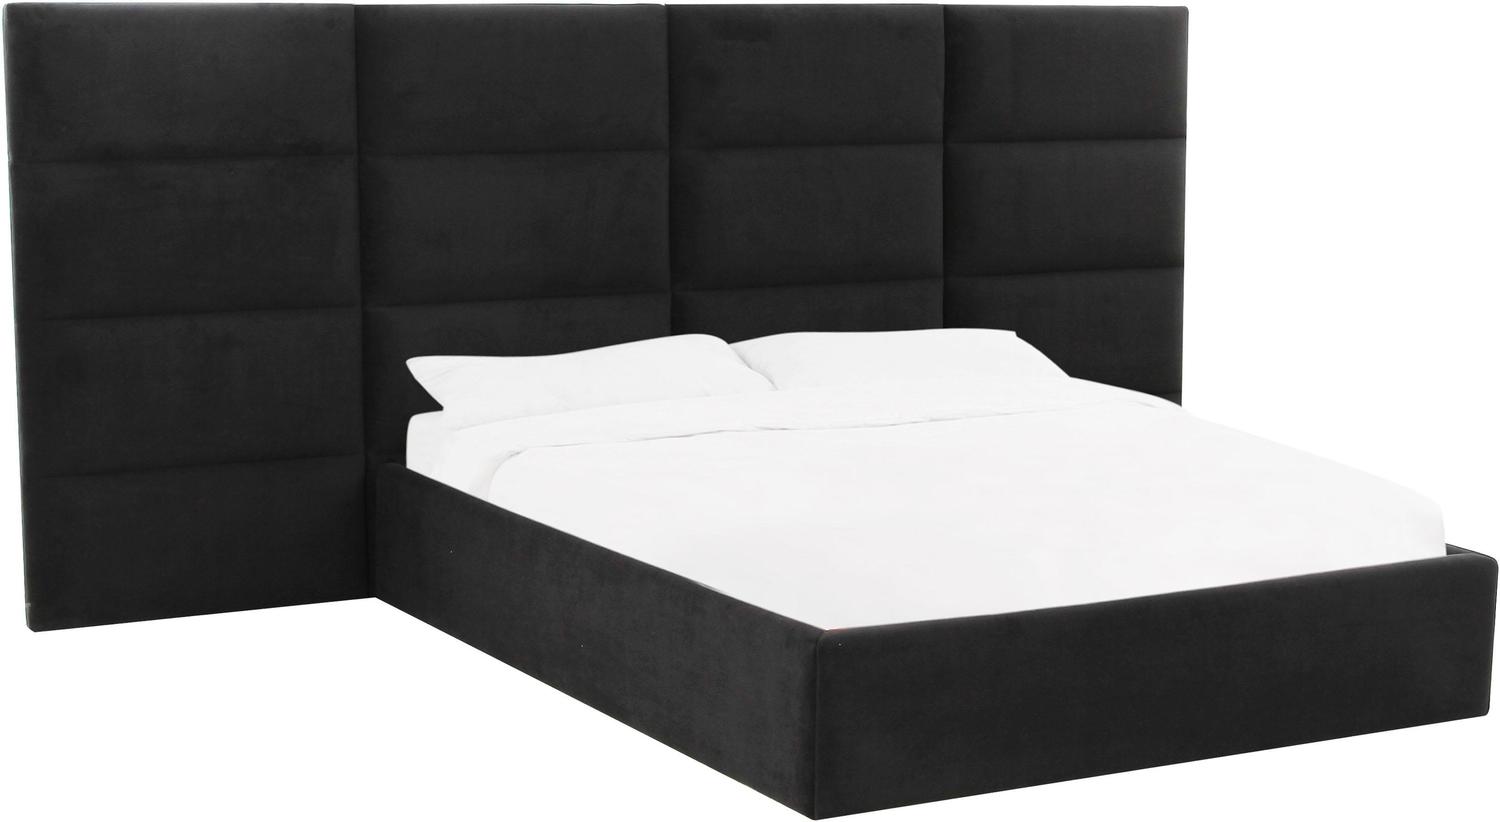 grey king platform bed Contemporary Design Furniture Beds Black